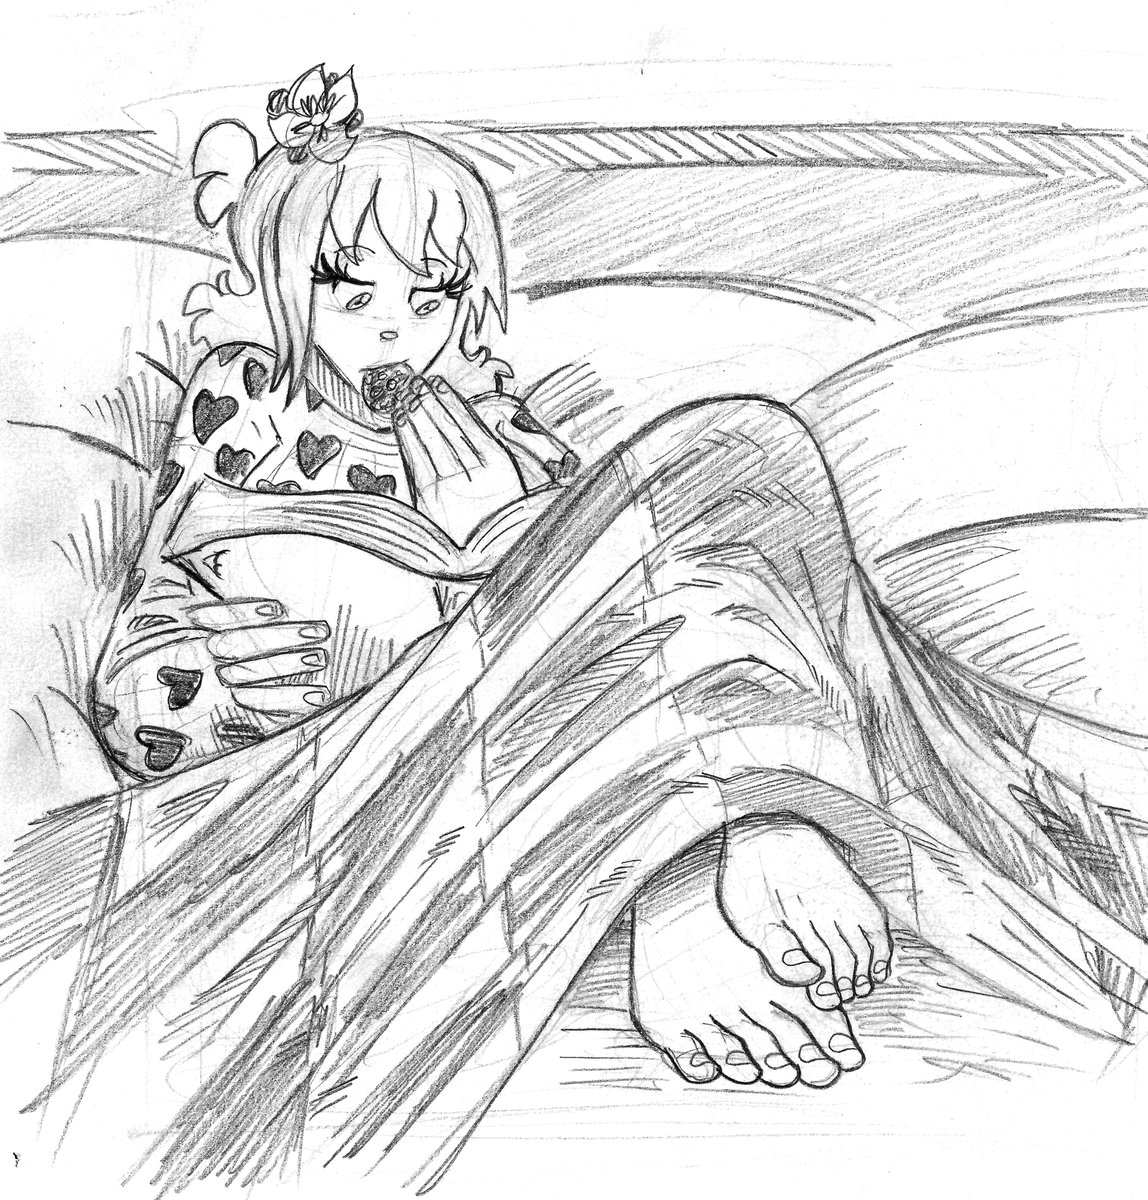 Cute Sandy in the bed

#characterdesign #character #Chara #pencil #pencilart #fumetto #comics #hero #manga #Everyday #cutegirl